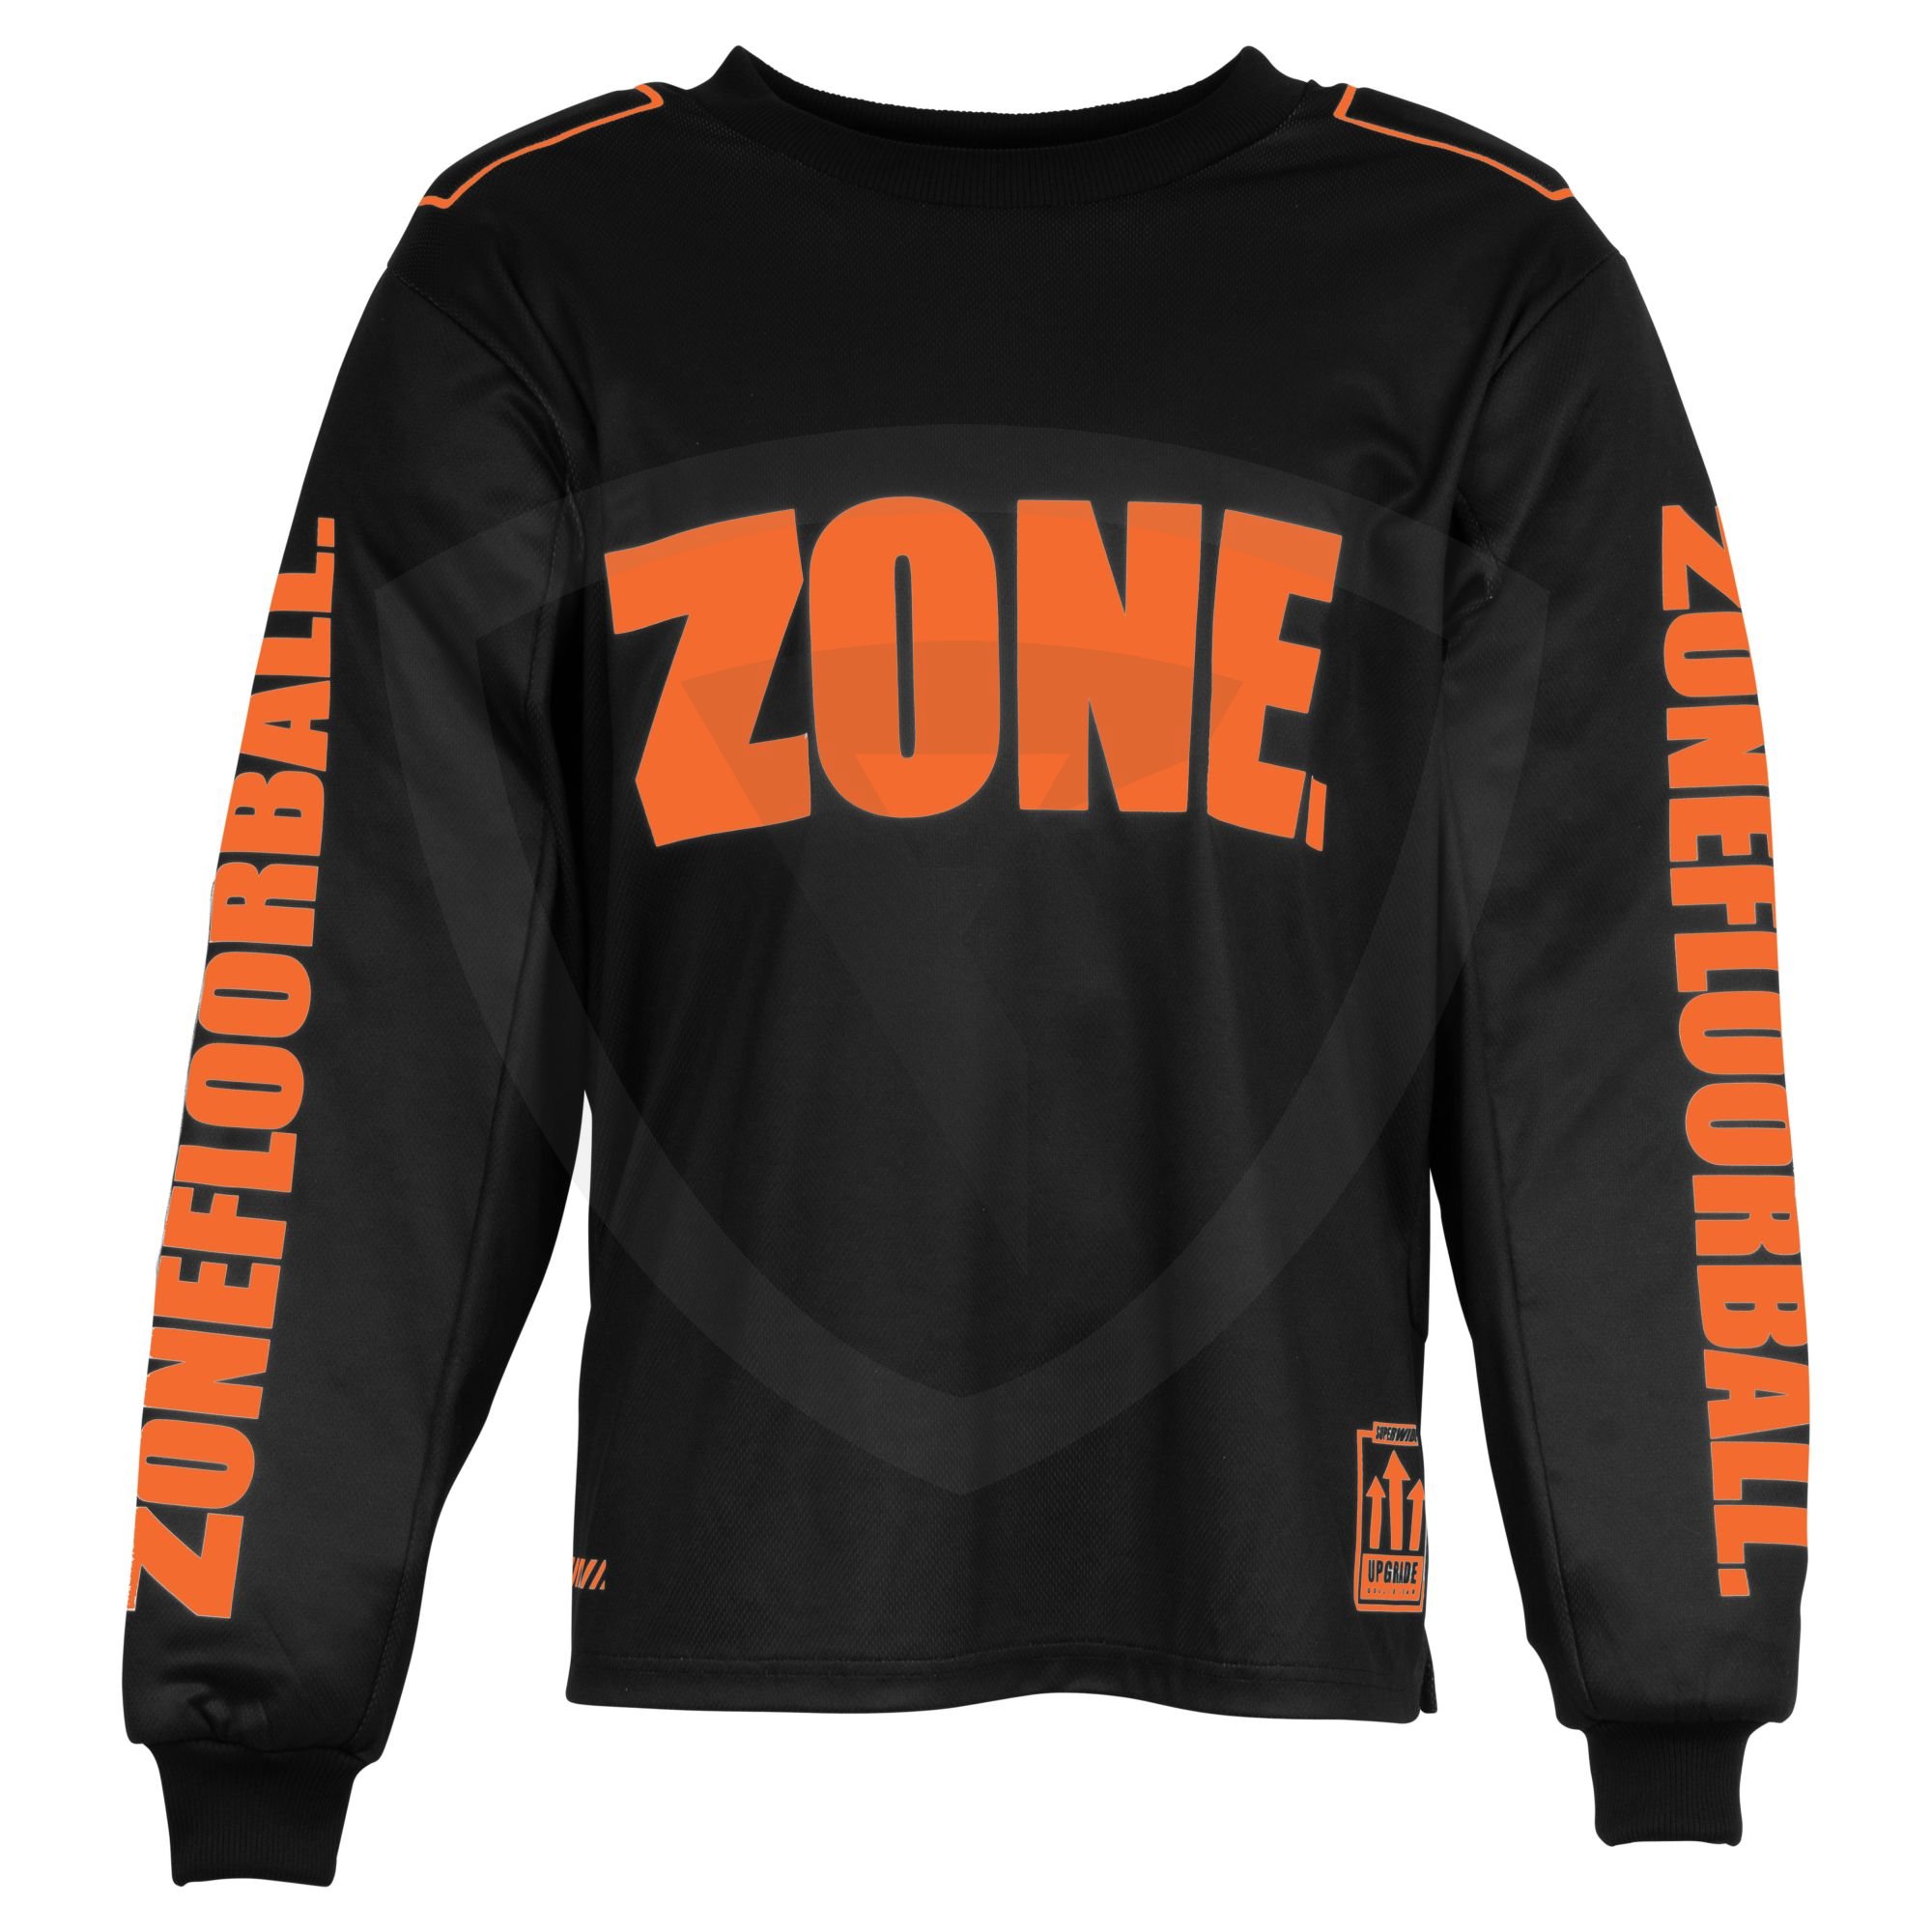 Zone UPGRADE SW Goalie Sweater SR. Black-Lava Orange M černá-oranžová